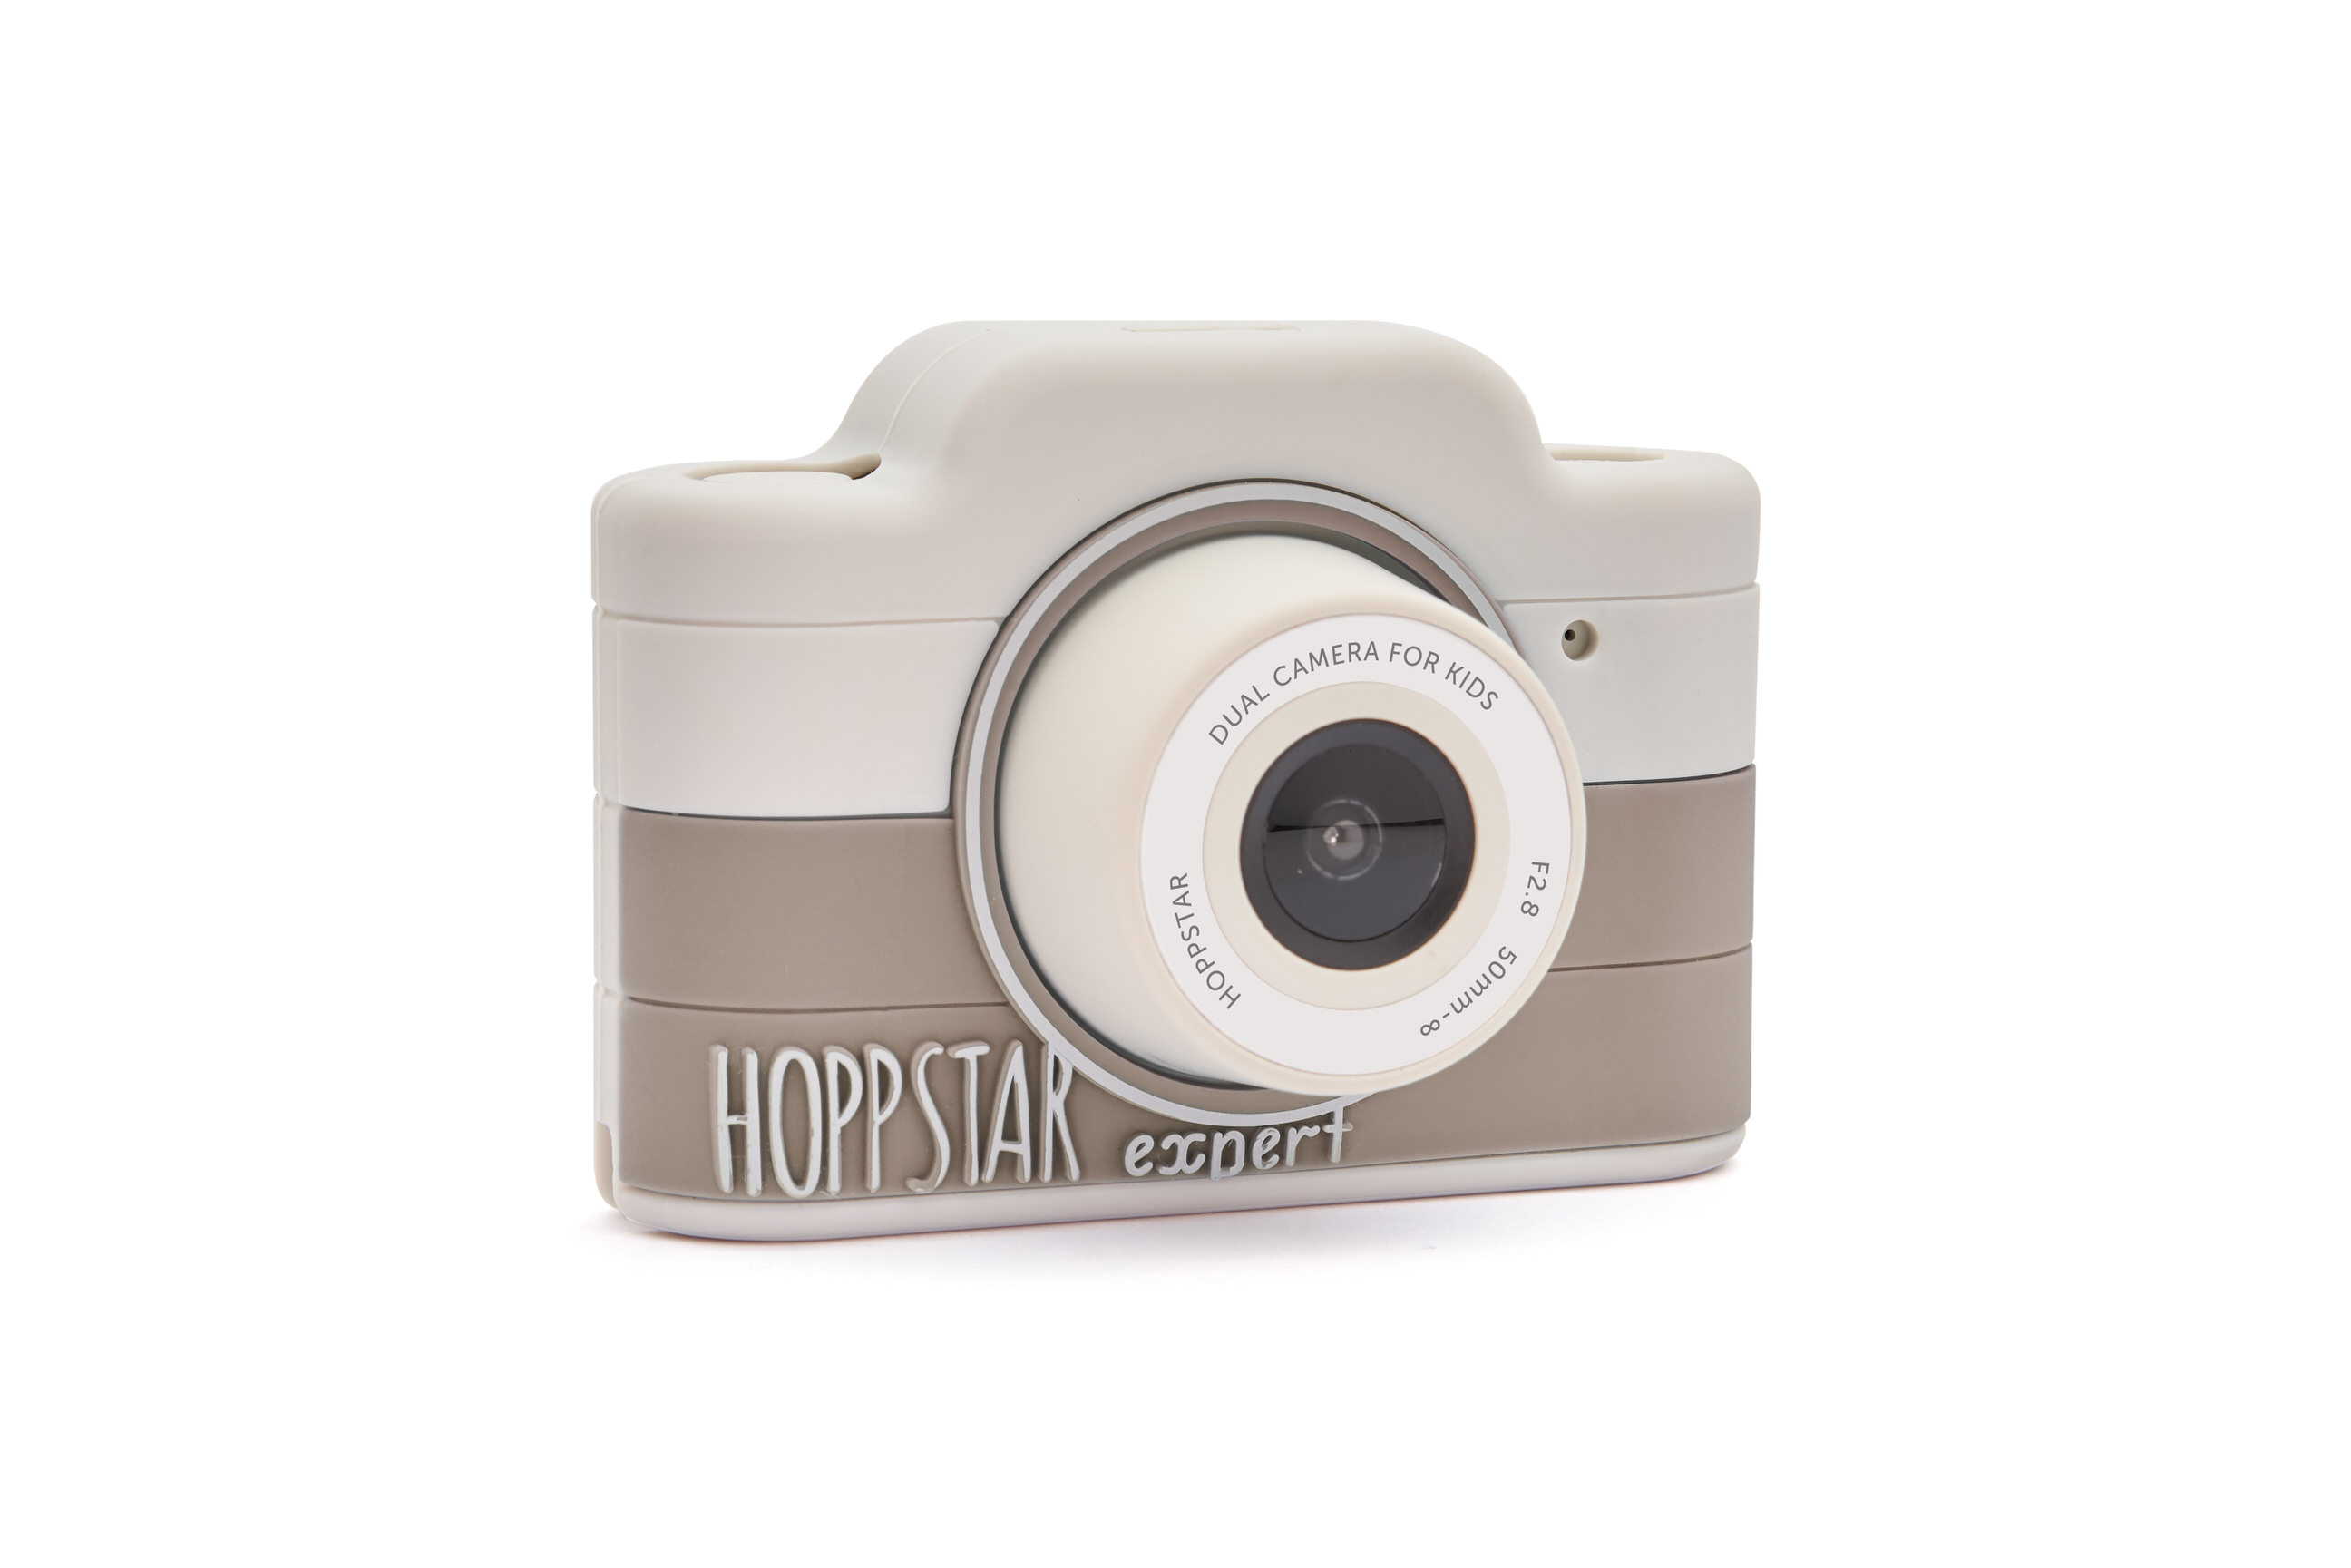 Hoppstar Expert Kamera mit Siena (braun/weiß) Silikonhülle, Frontalansicht leicht schräg